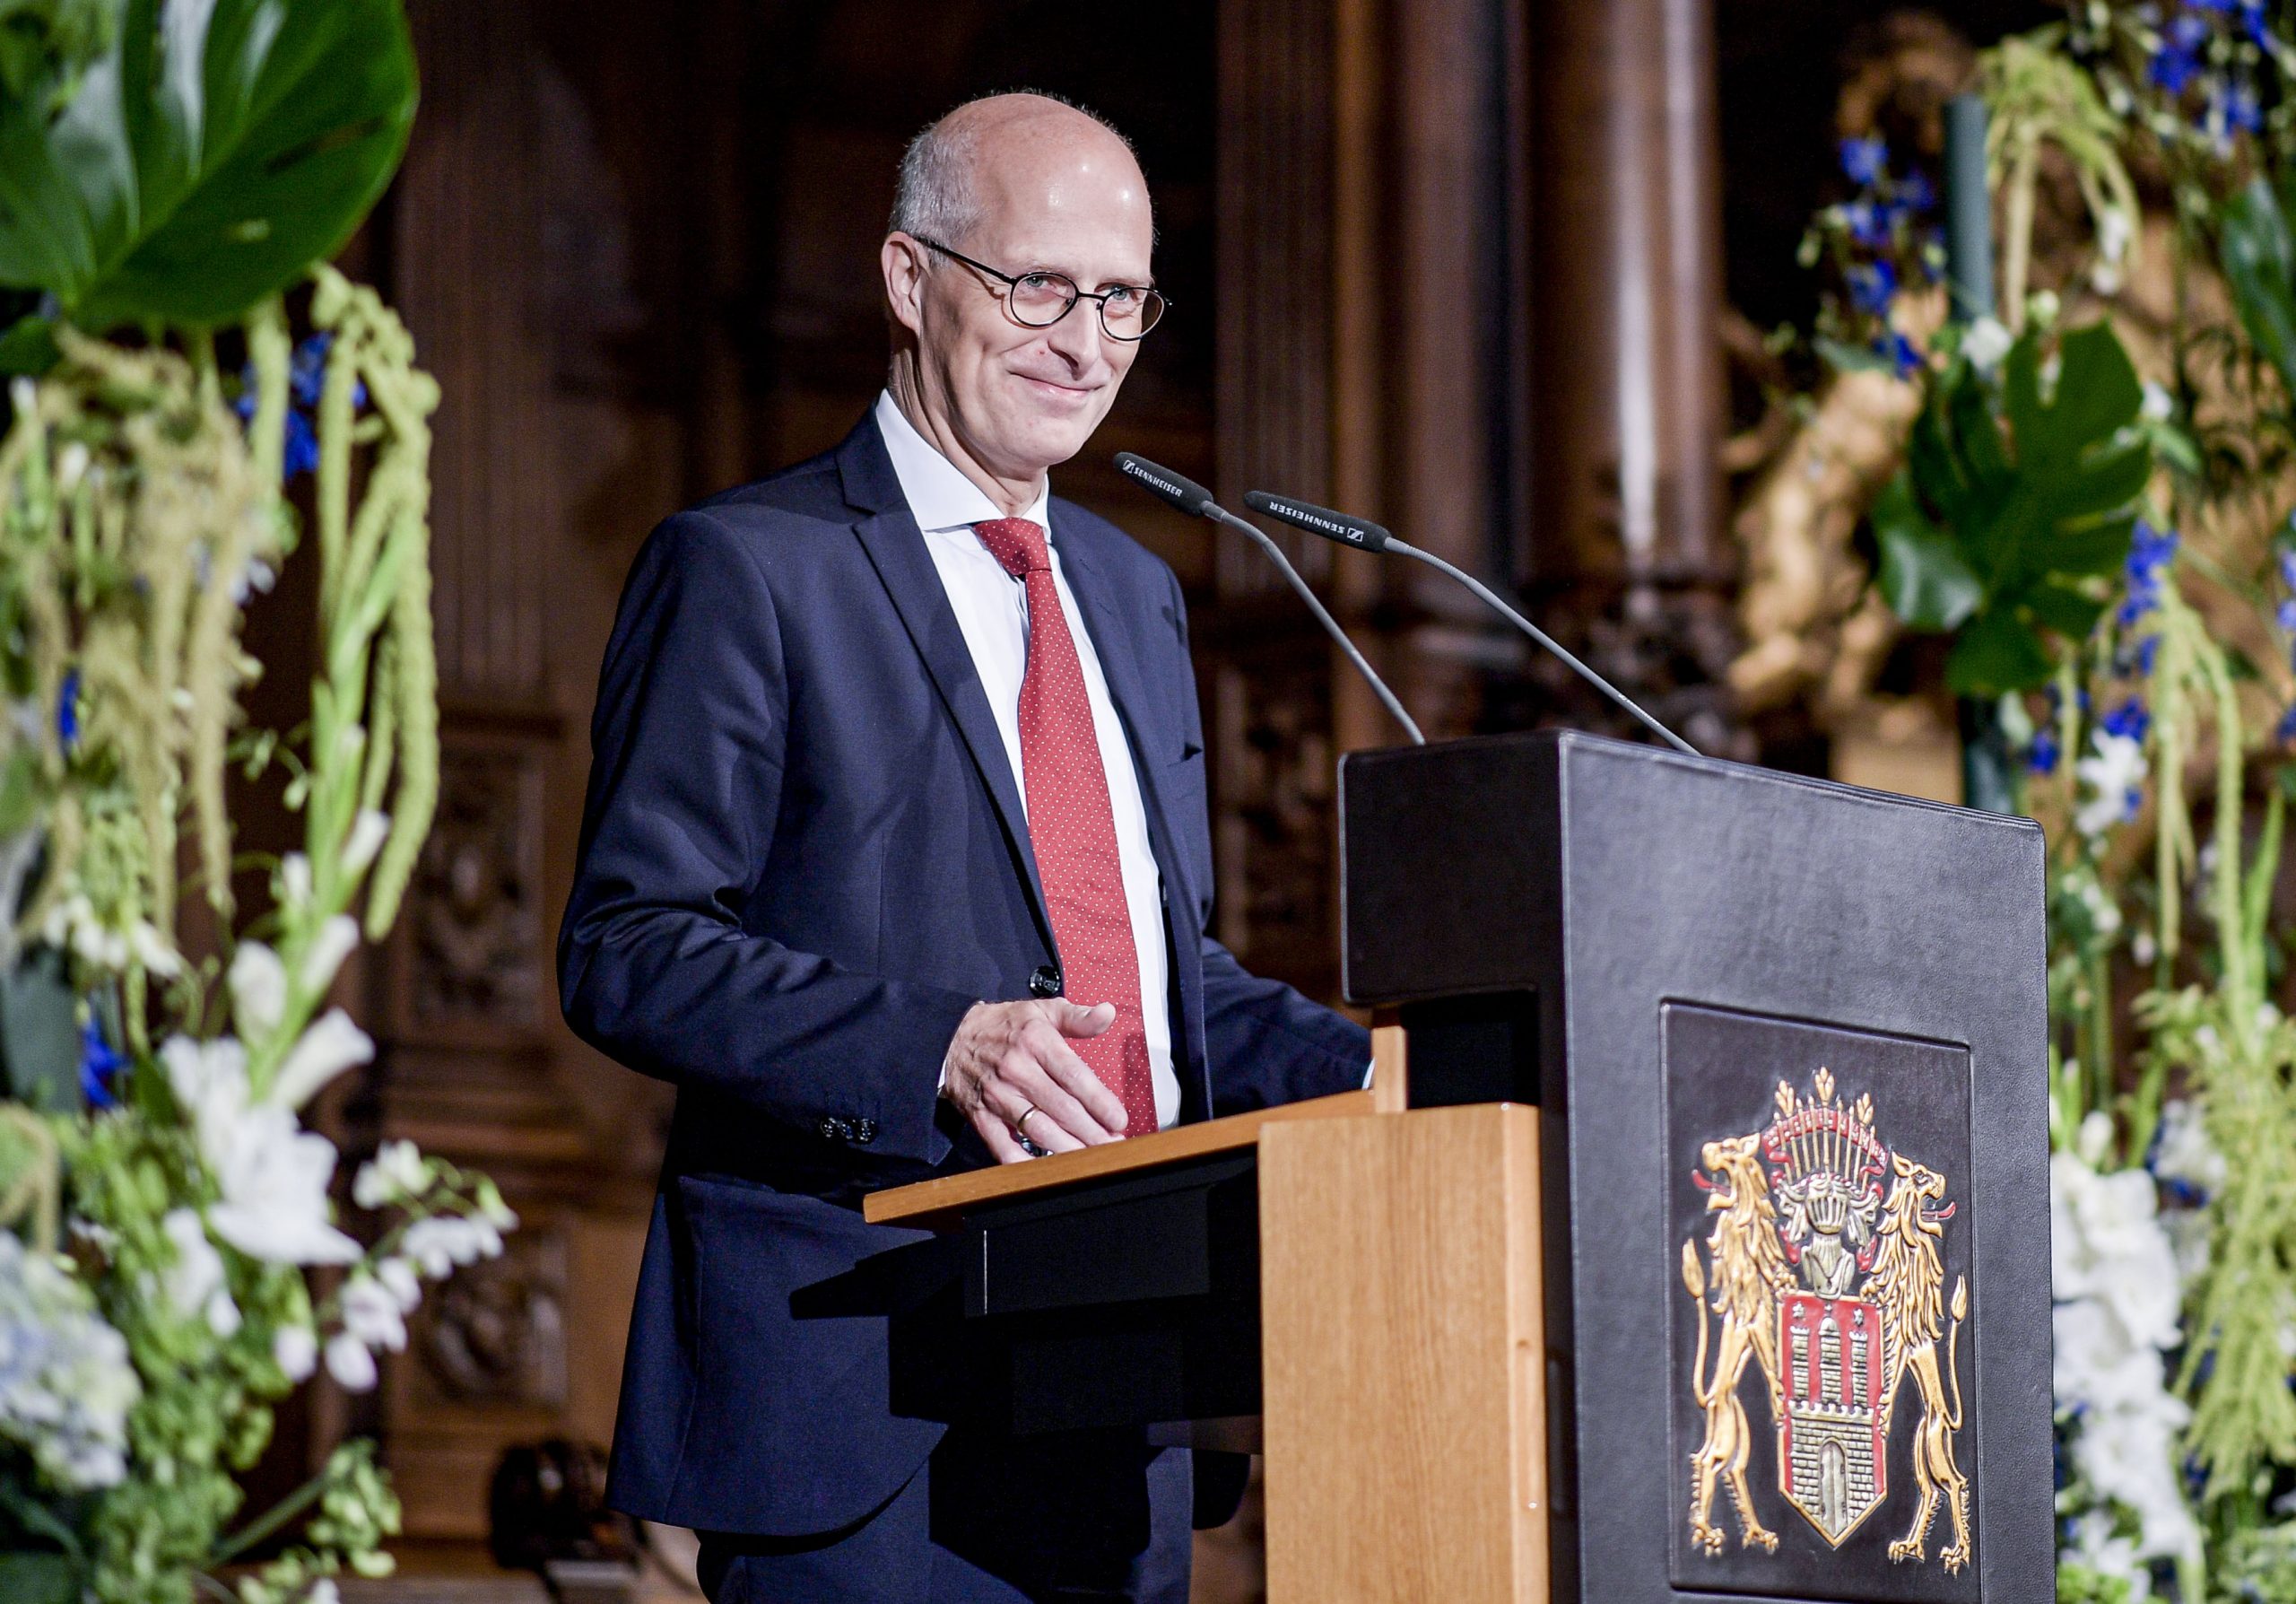 Peter Tschentscher (SPD), Hamburgs Erster Bürgermeister spricht bei der Verleihung des Körber-Preises im Rathaussaal.